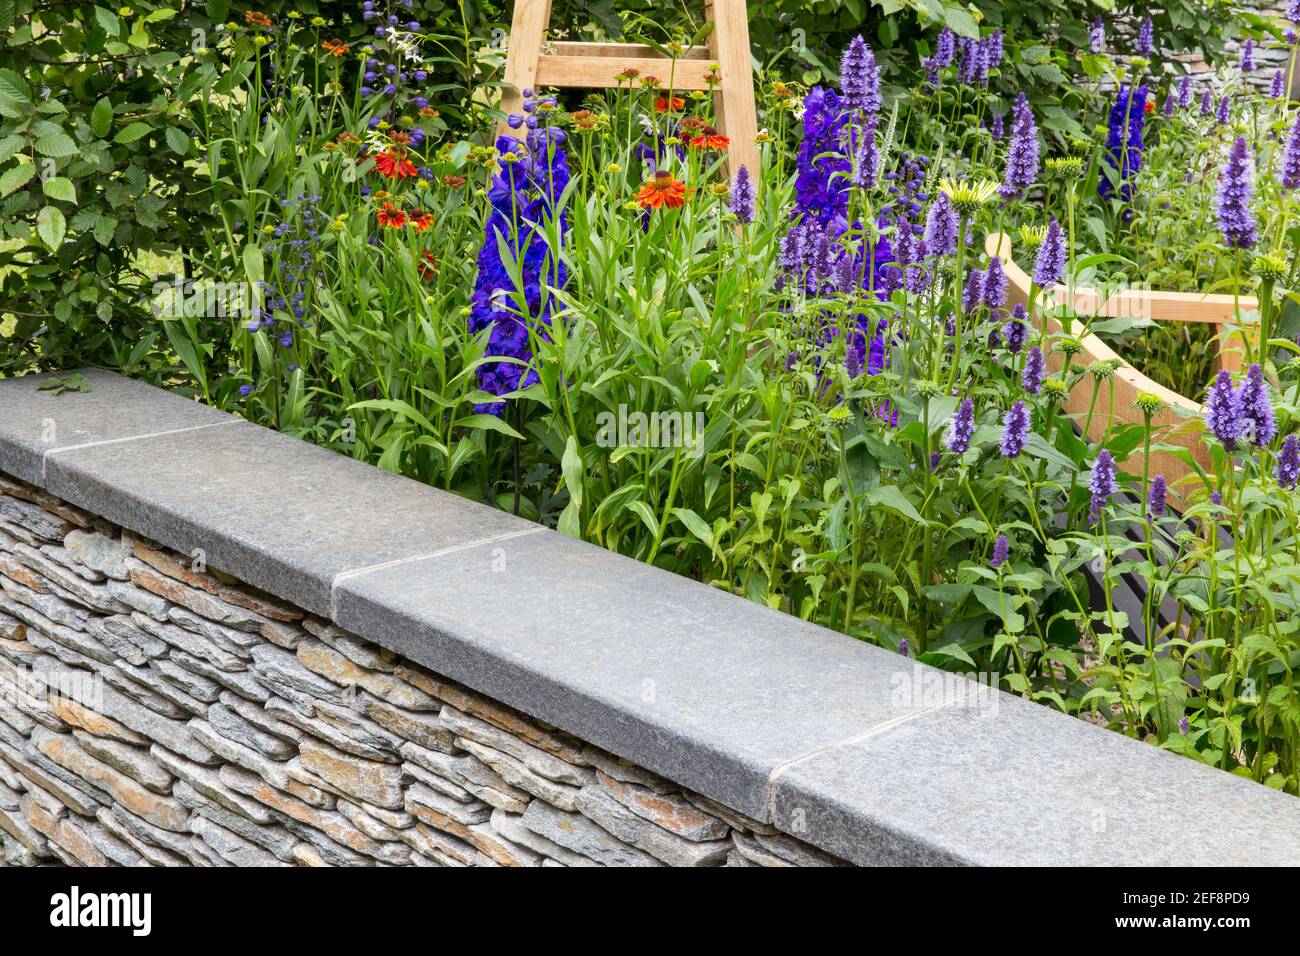 Ein englisches Cottage Country Garten mit Trockensteinmauer und Blumenbeet Garten Grenze wachsenden Agastache Blumen im Sommer London Großbritannien Stockfoto